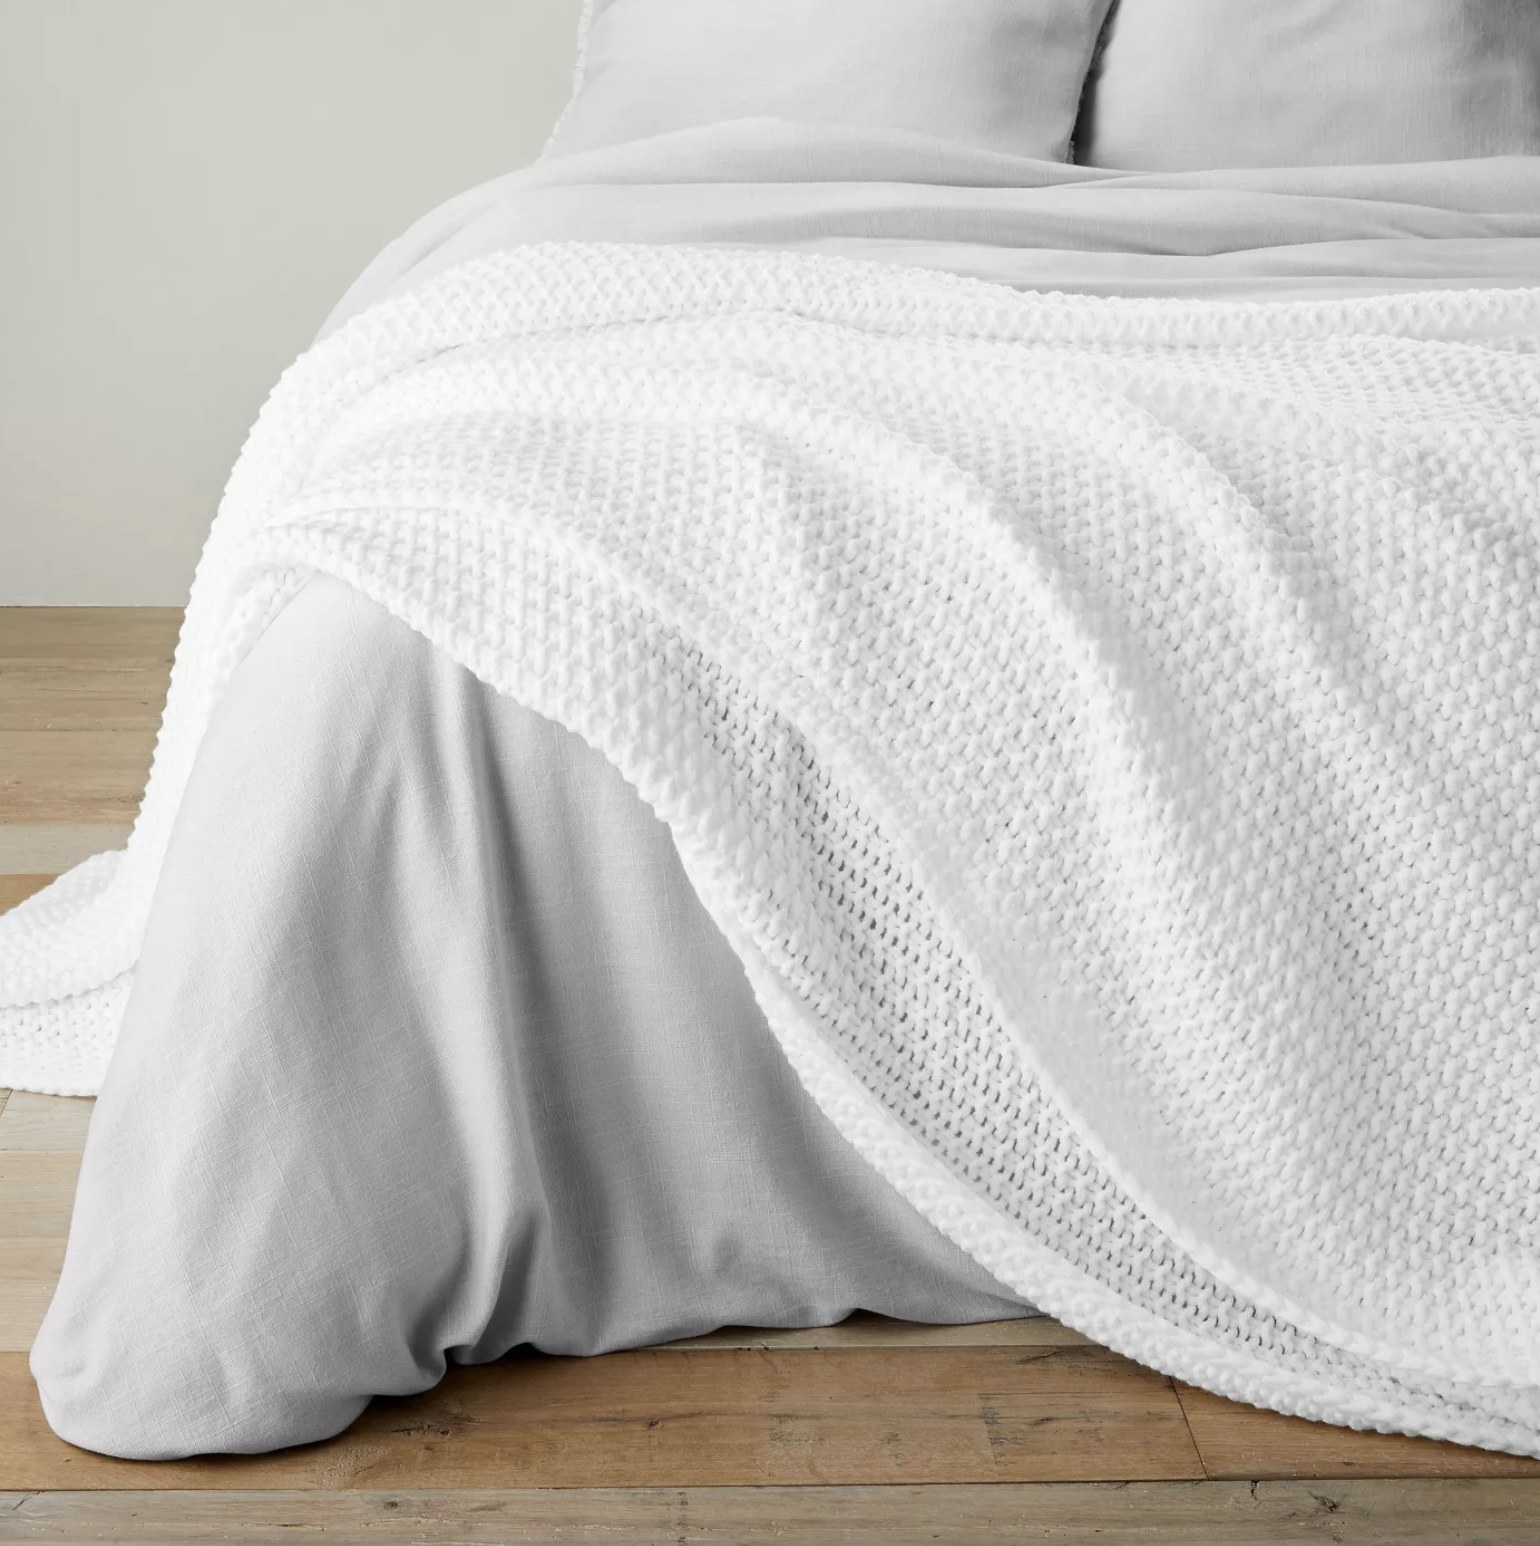 A white knit blanket